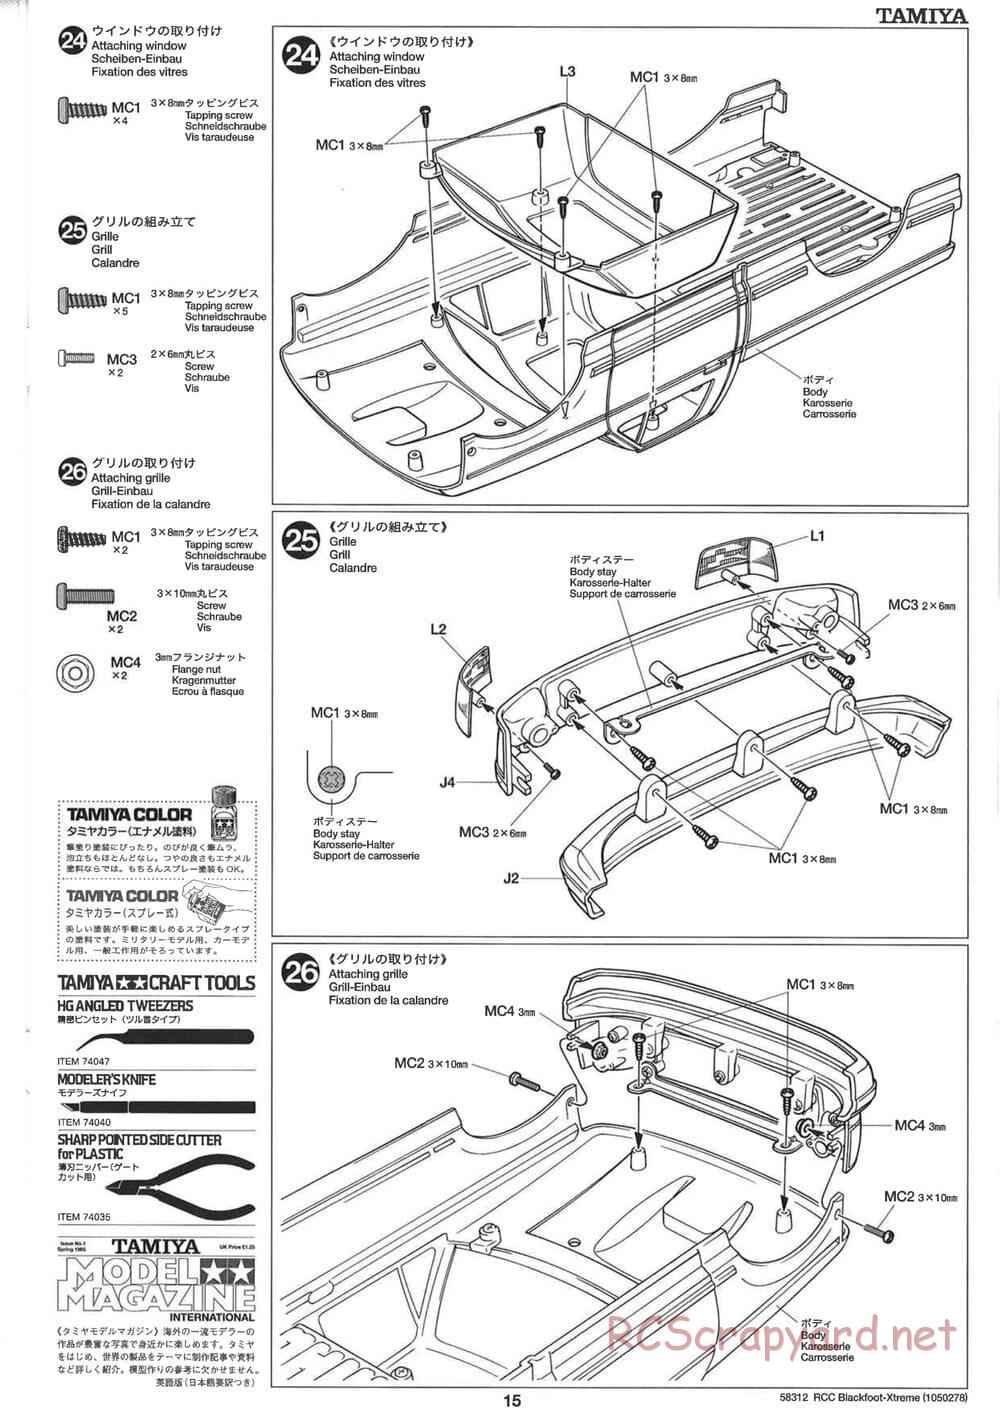 Tamiya - Blackfoot Xtreme - WT-01 Chassis - Manual - Page 15